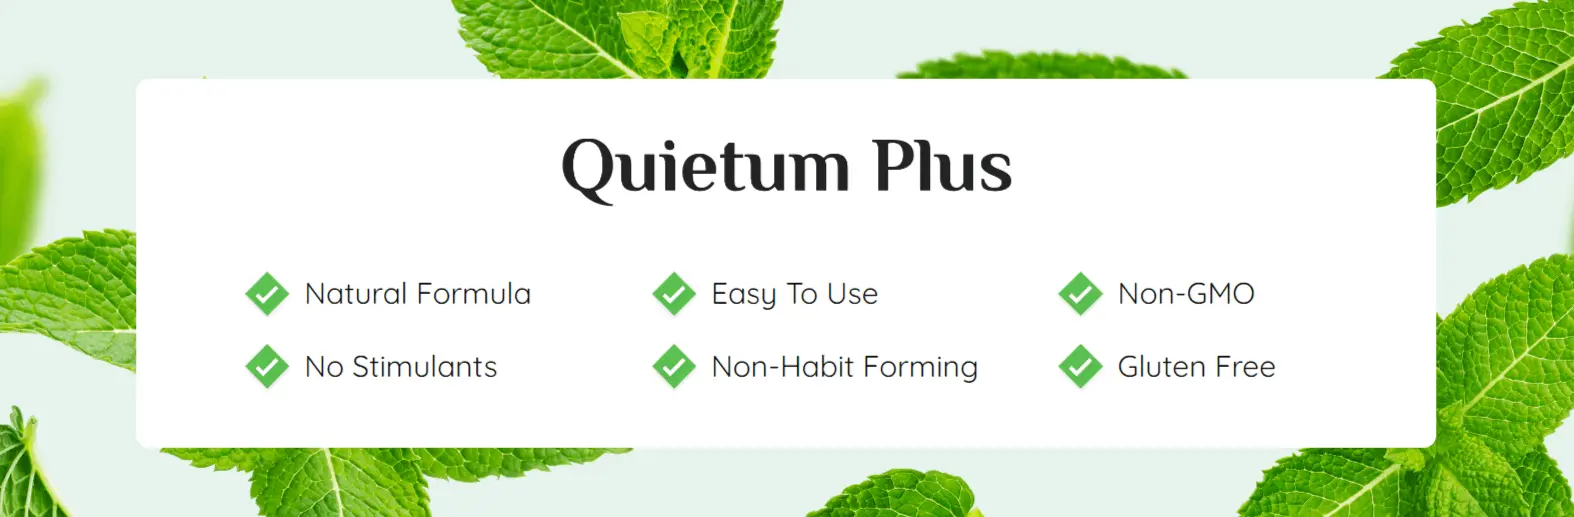 quietum-plus-benefits